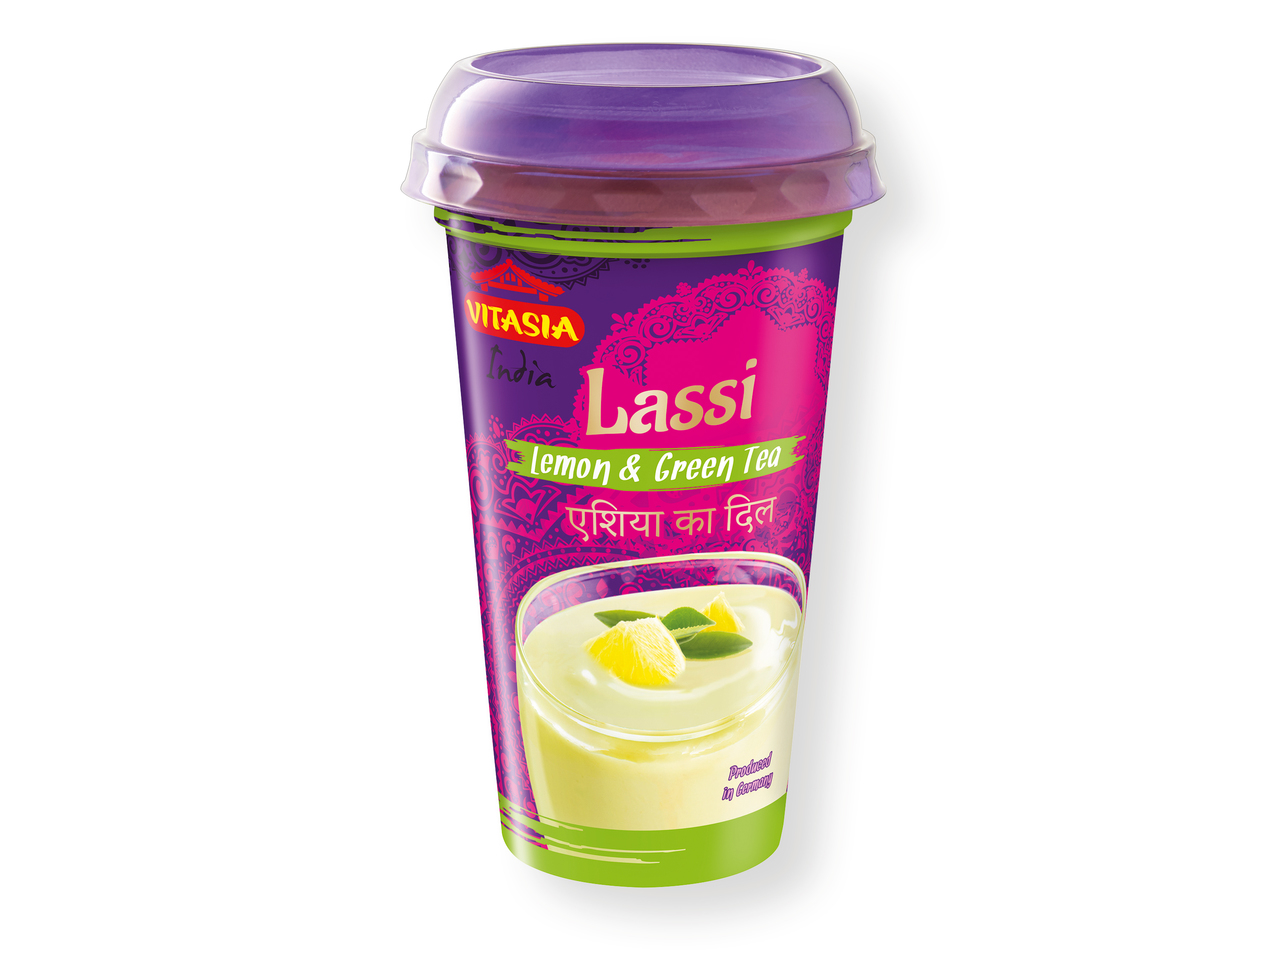 "Vitasia" Yogur para beber Lassi